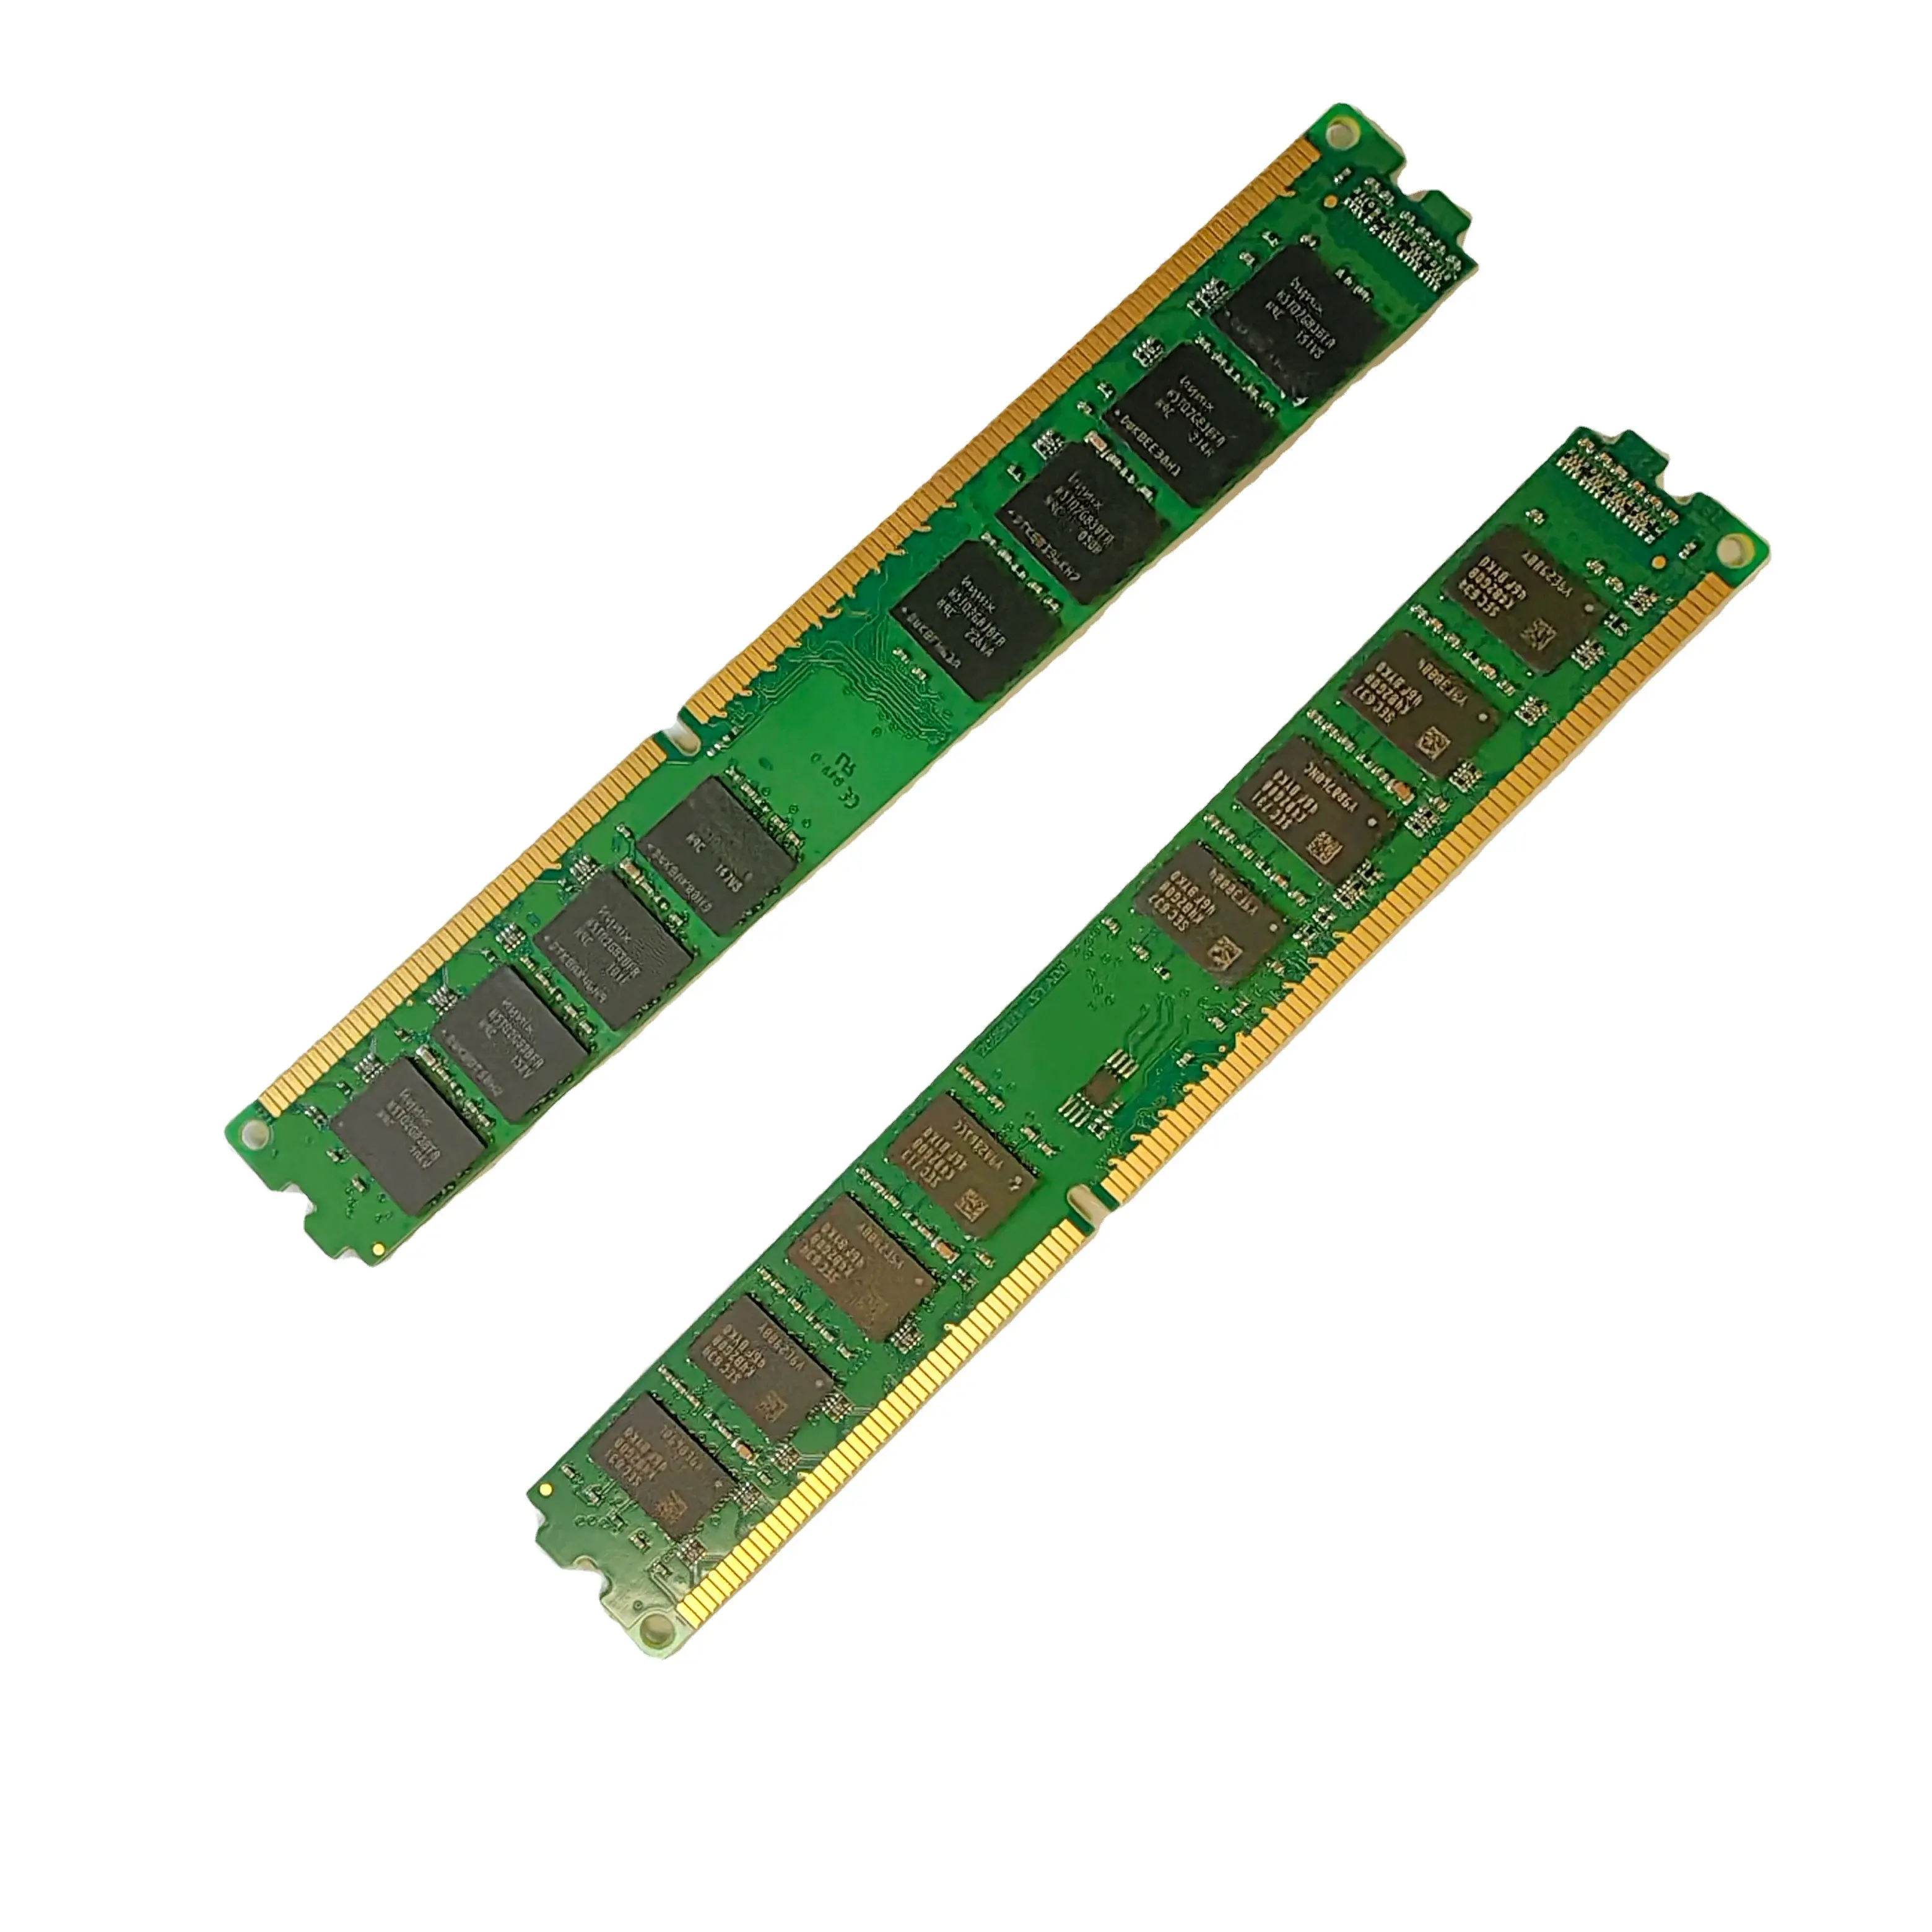 Toptan iyi fiyat DDR3 yeni yapılan 8GB RAM 1333/1600 MHZ 1.5V bellek masaüstü çift sıra